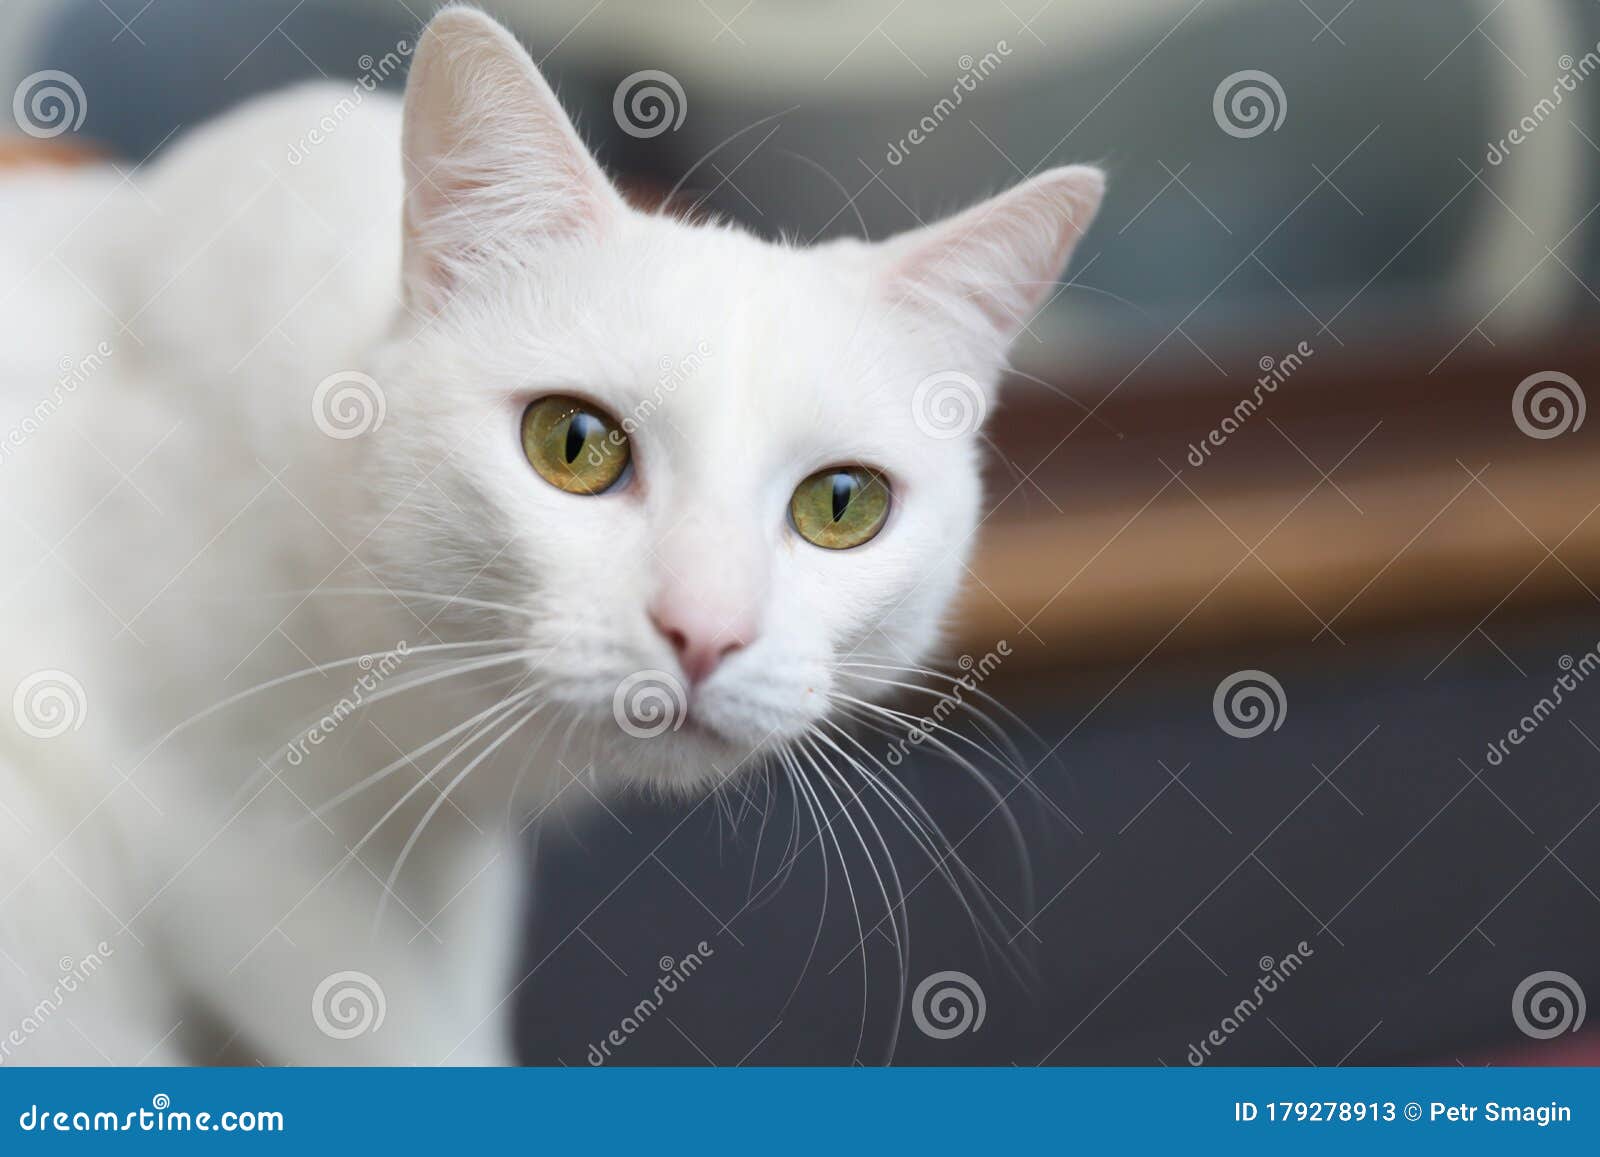 家白猫画像库存图片 图片包括有家白猫画像